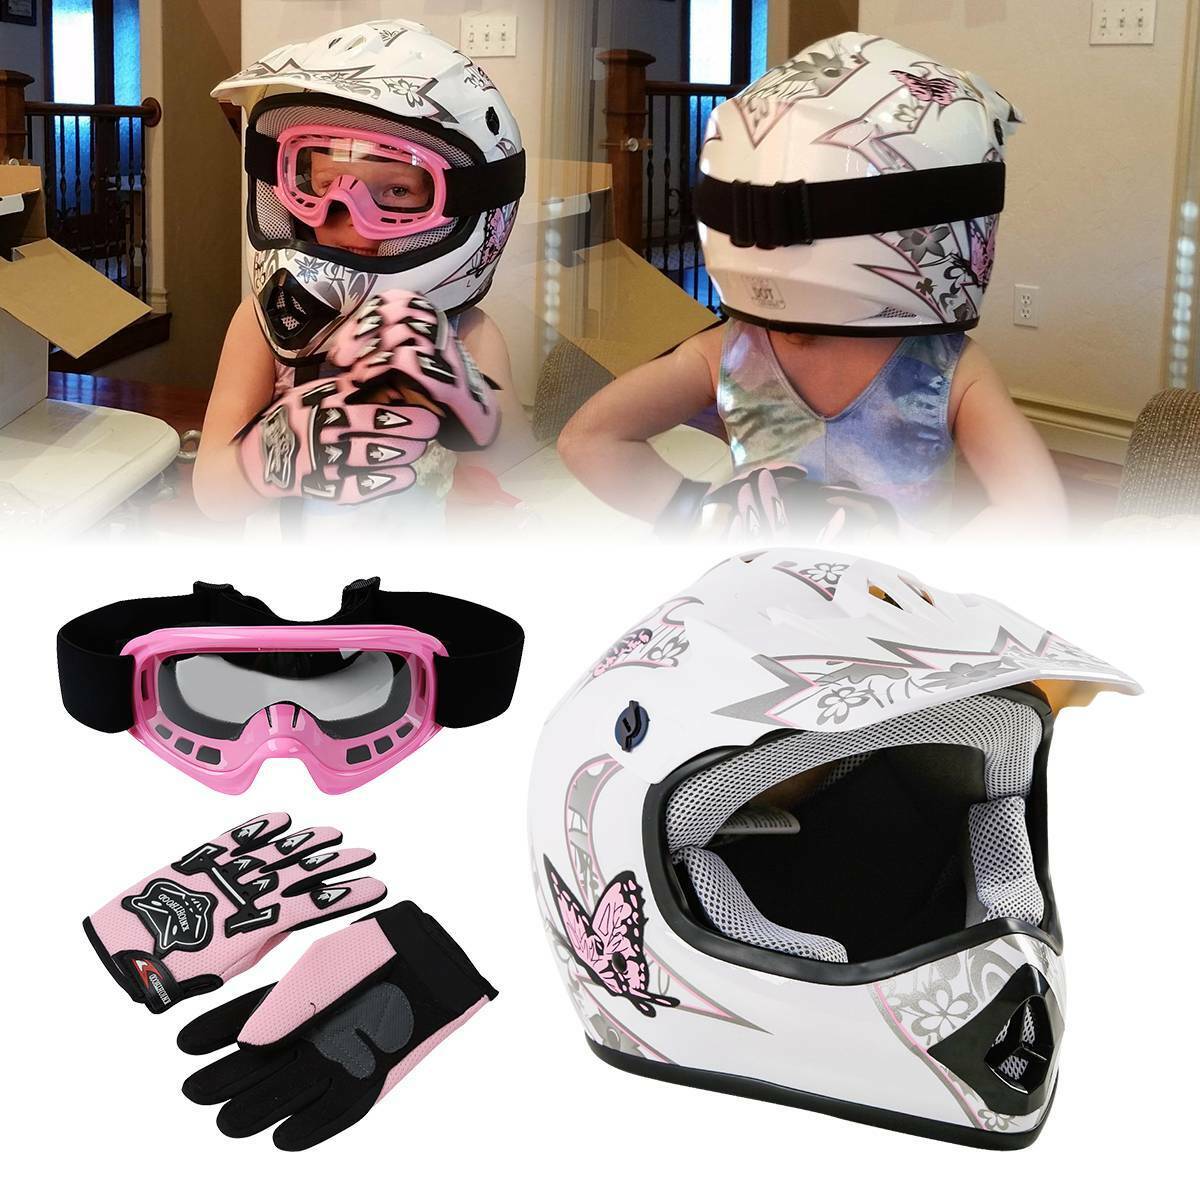 DOT Youth Kids Helmet Dirt Bike ATV Motocross Motorcycle S-XL Goggles Gloves